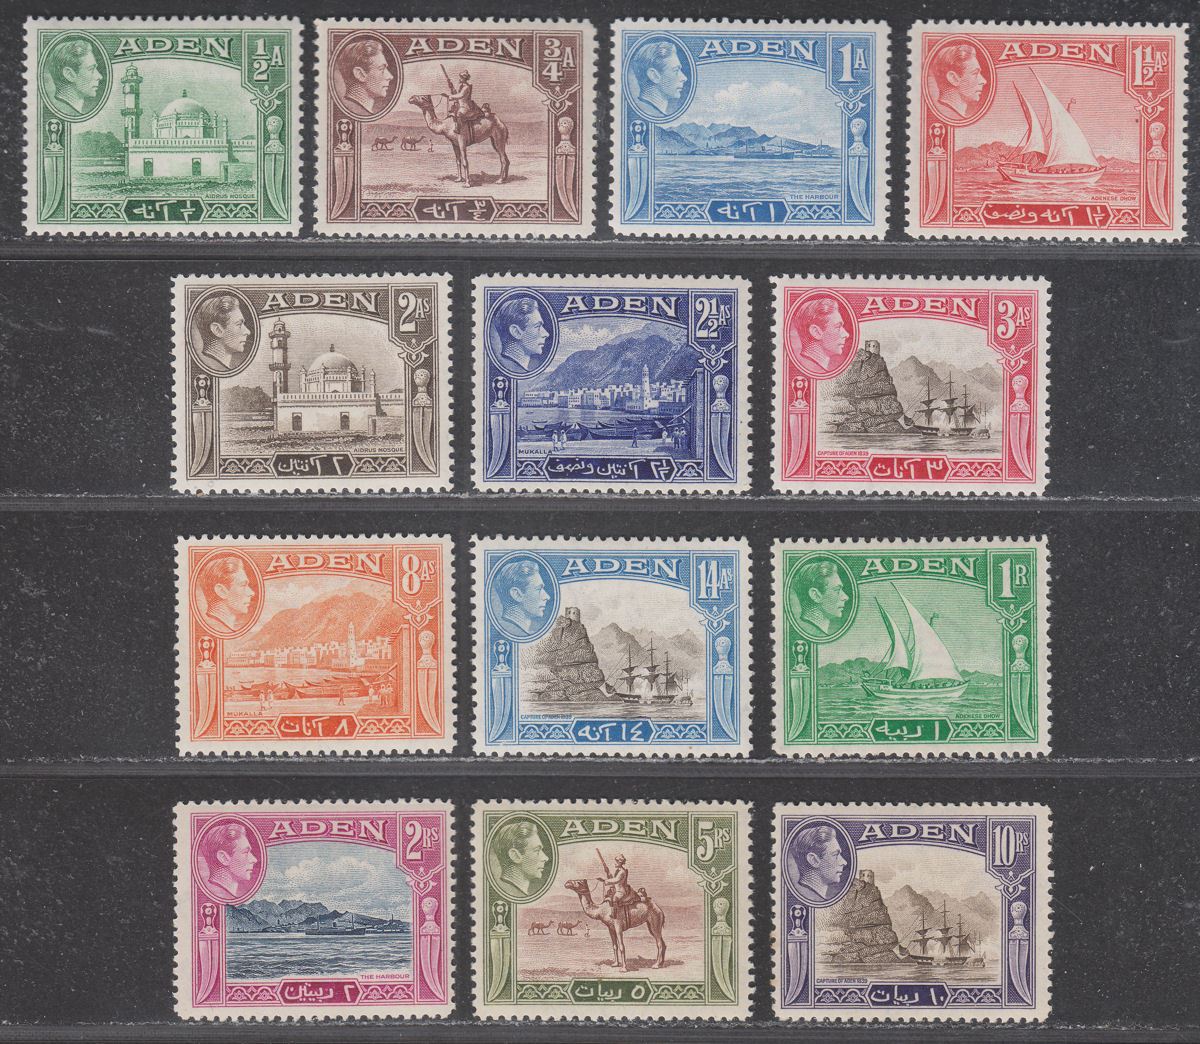 Aden 1939-48 King George VI Set Mint SG16-27 cat £130